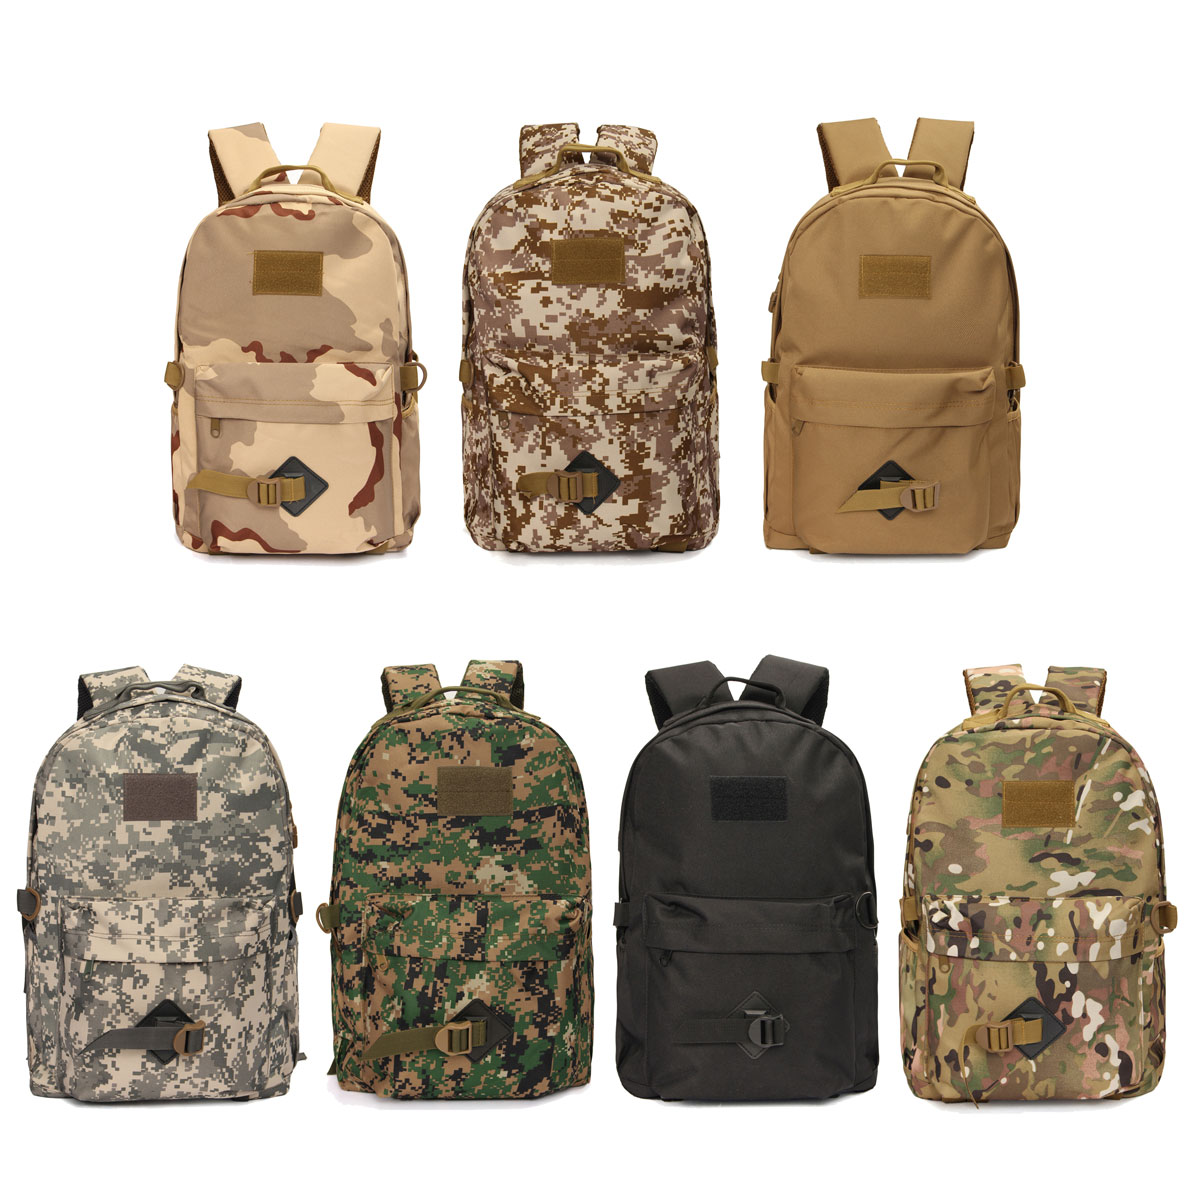 30L-Outdoor-Backpack-Camo-Shoulder-Bag-Rucksack-For-Camping-Hiking-Travel-1047626-1